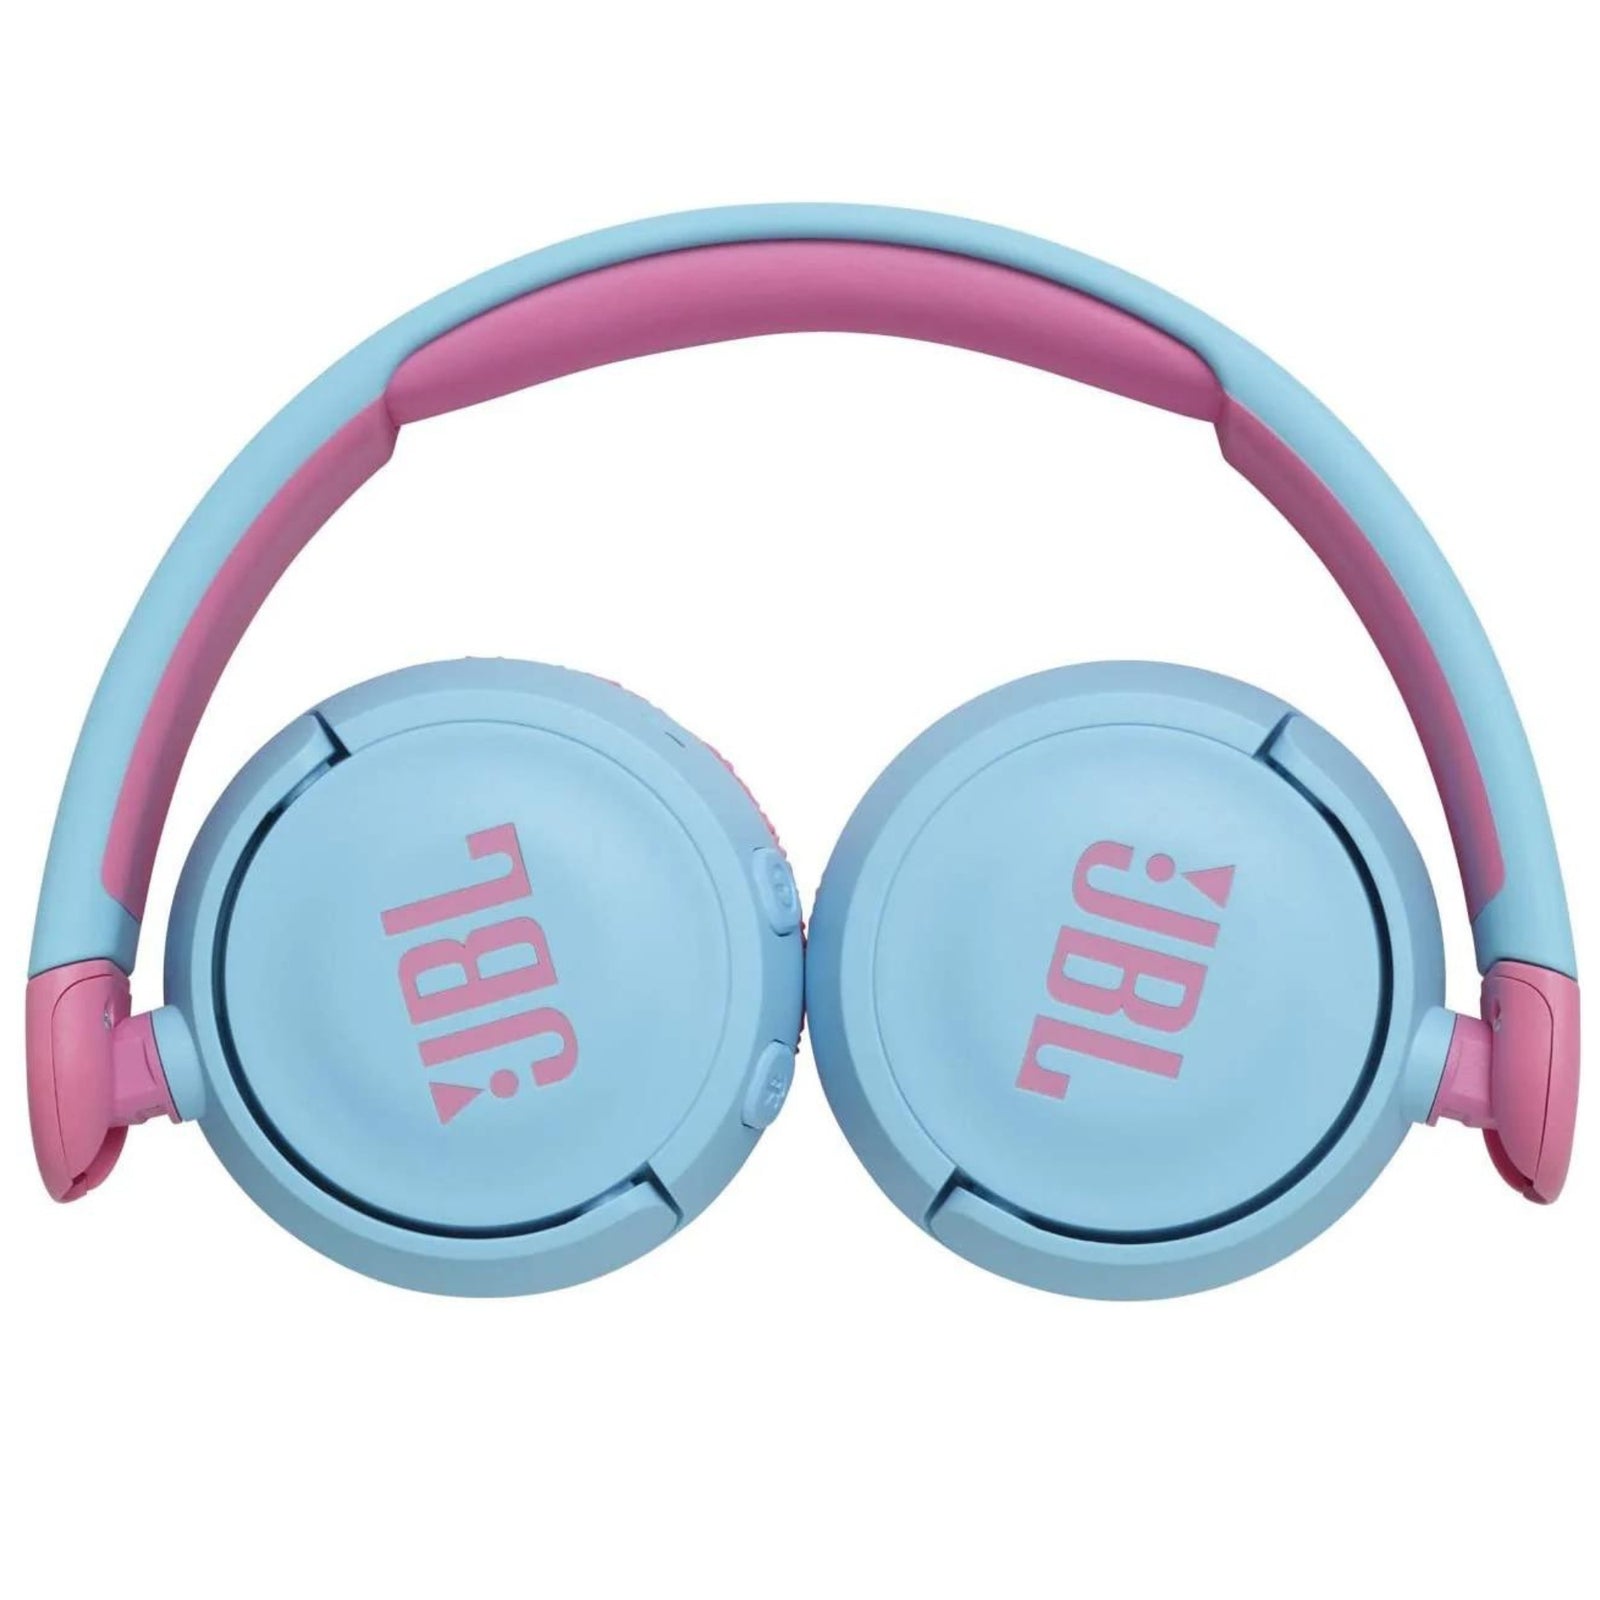 JBL Jr310bt Kids On-ear Wireless Bluetooth Headphones